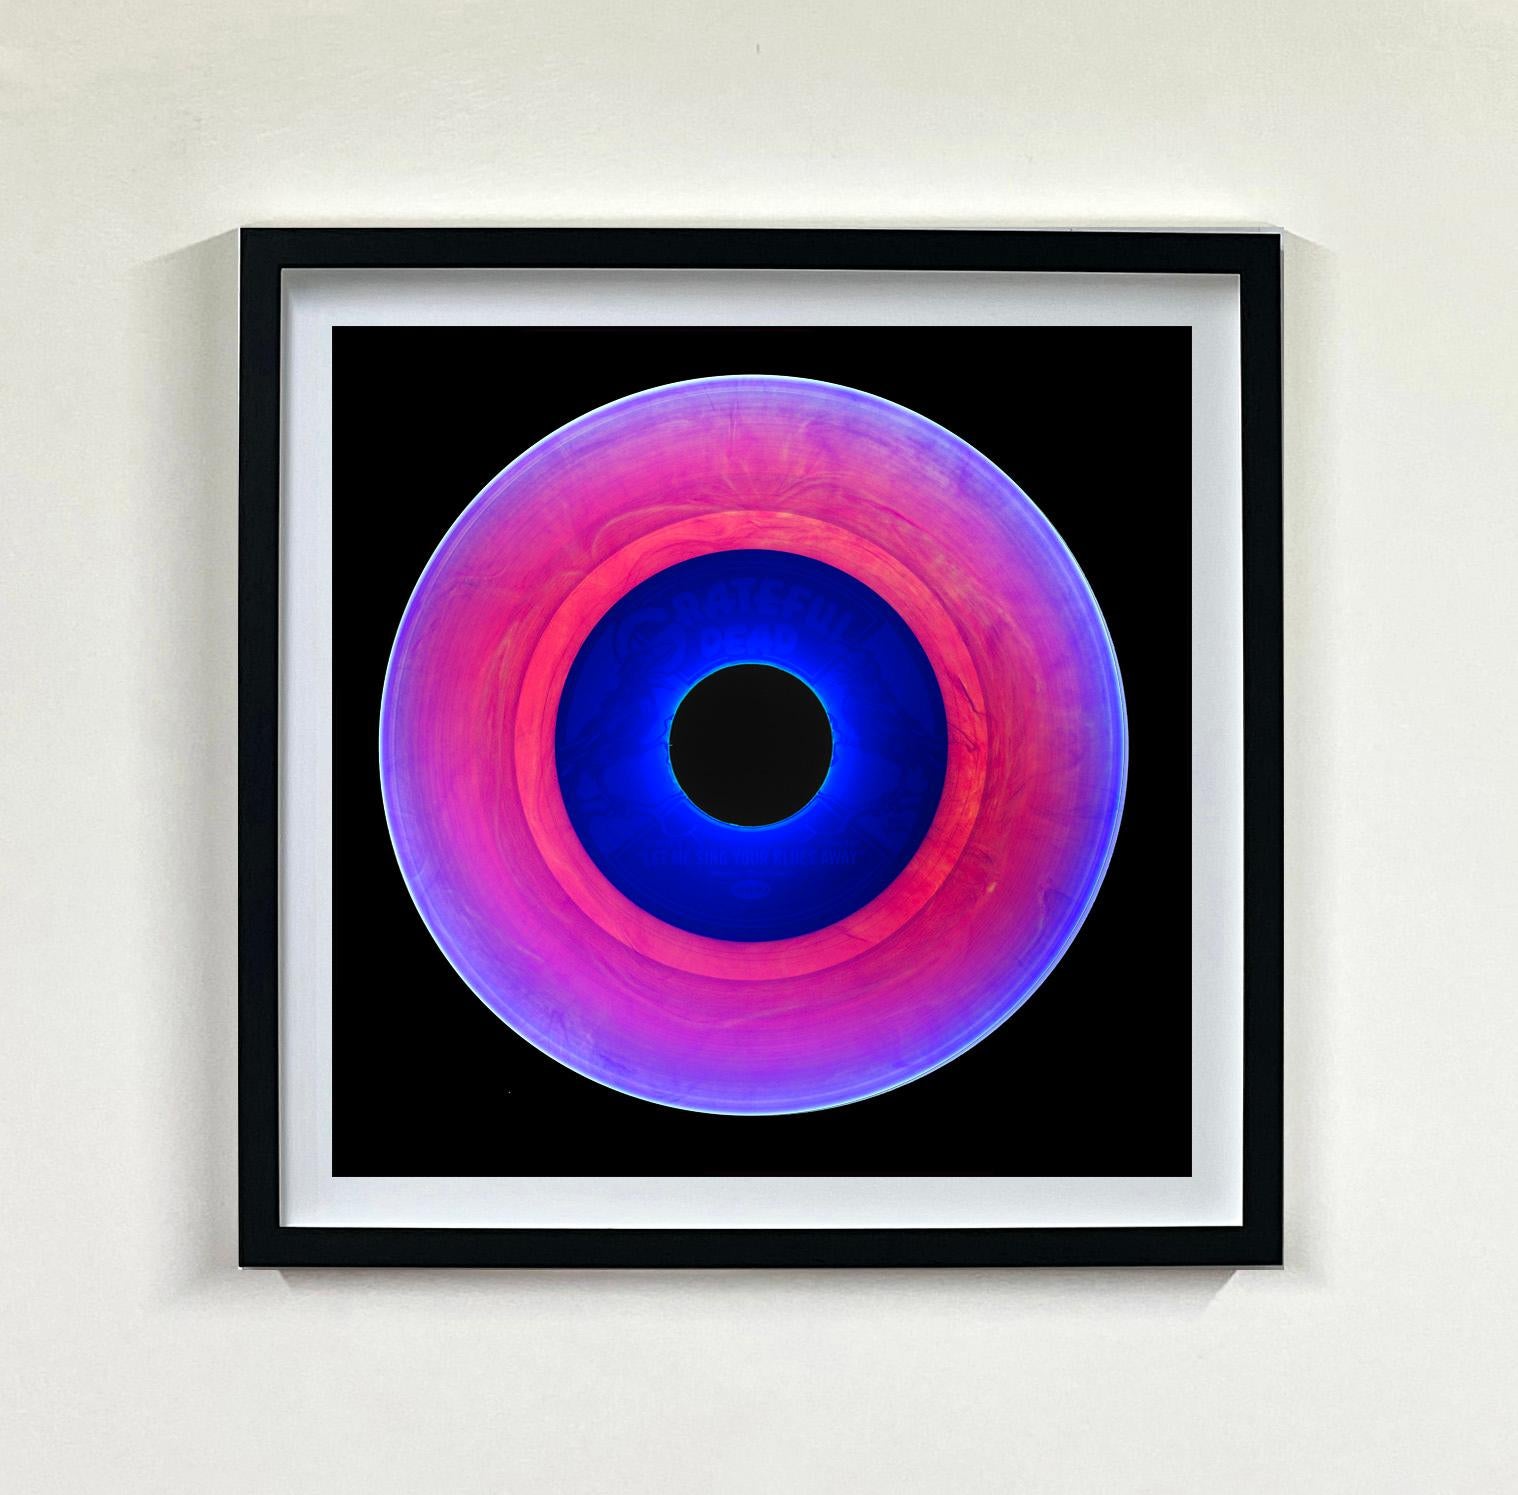 Heidler & Heeps Vinyl Collection Sechzehnteilige mehrfarbige quadratische Installation.
Die renommierten zeitgenössischen Fotografen Richard Heeps und Natasha Heidler haben für diese wunderschöne, faszinierende Kollektion zusammengearbeitet. Ein